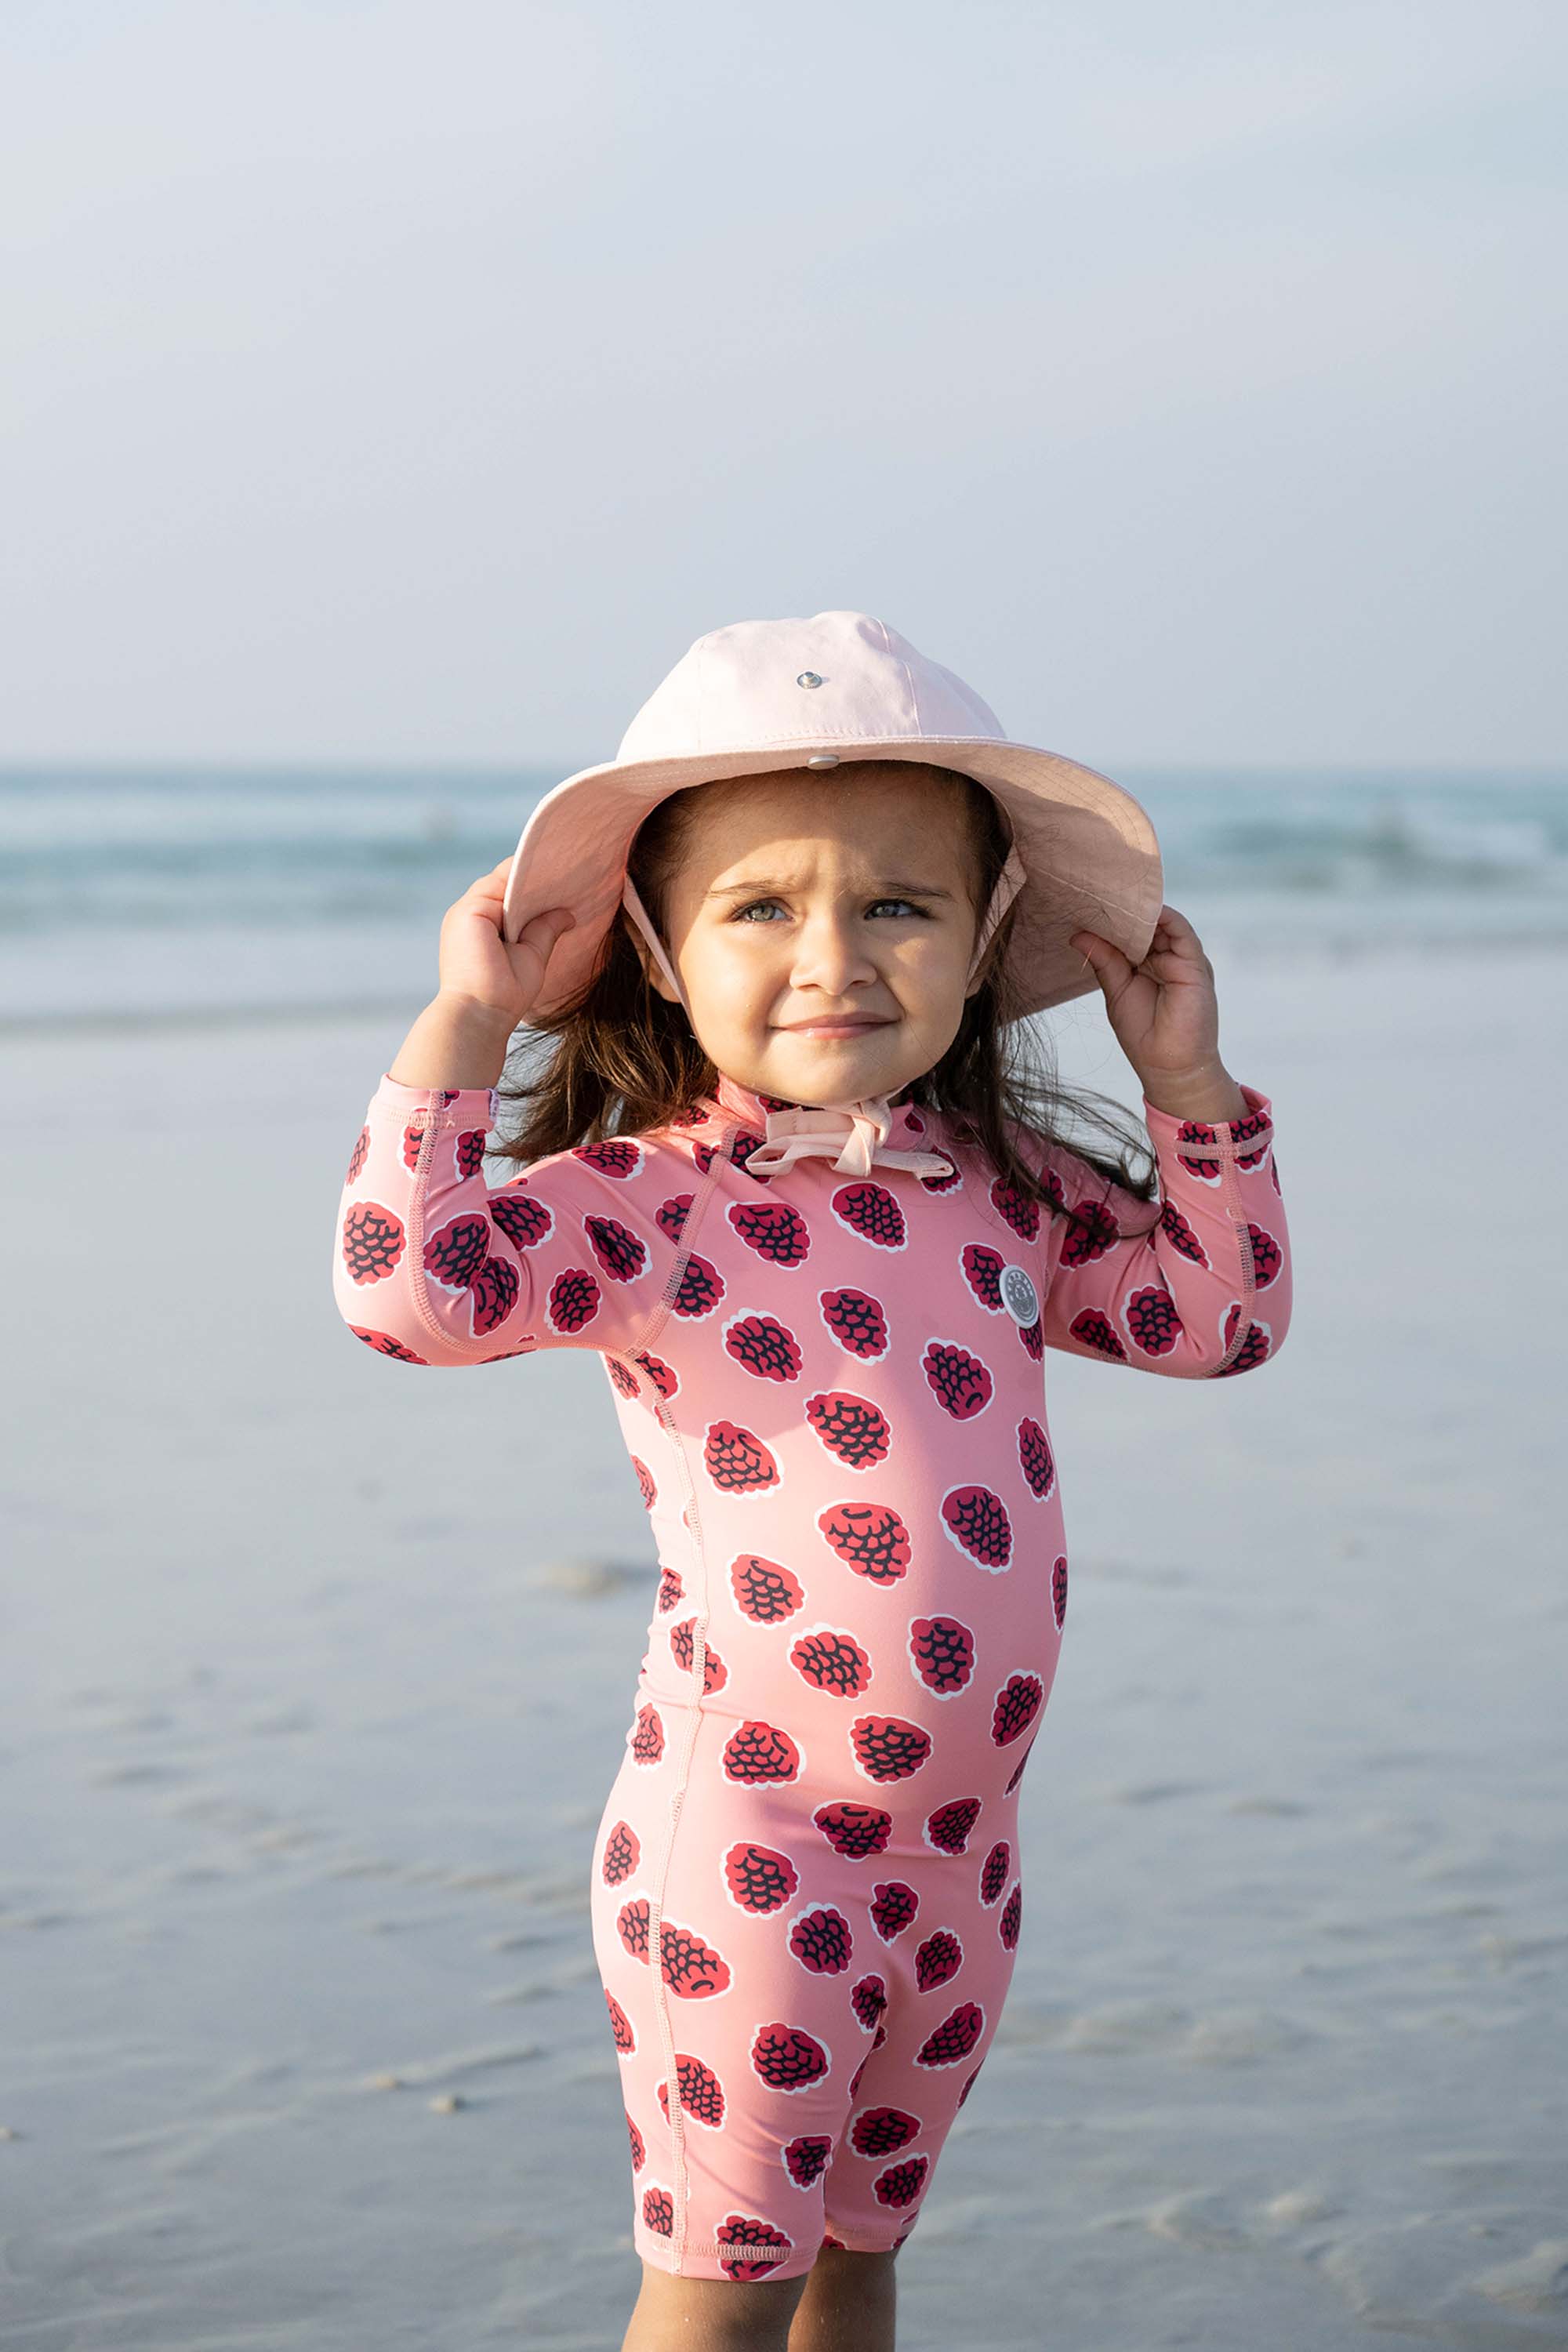 Cappellino anti-UV per neonati/bambini - Rosa